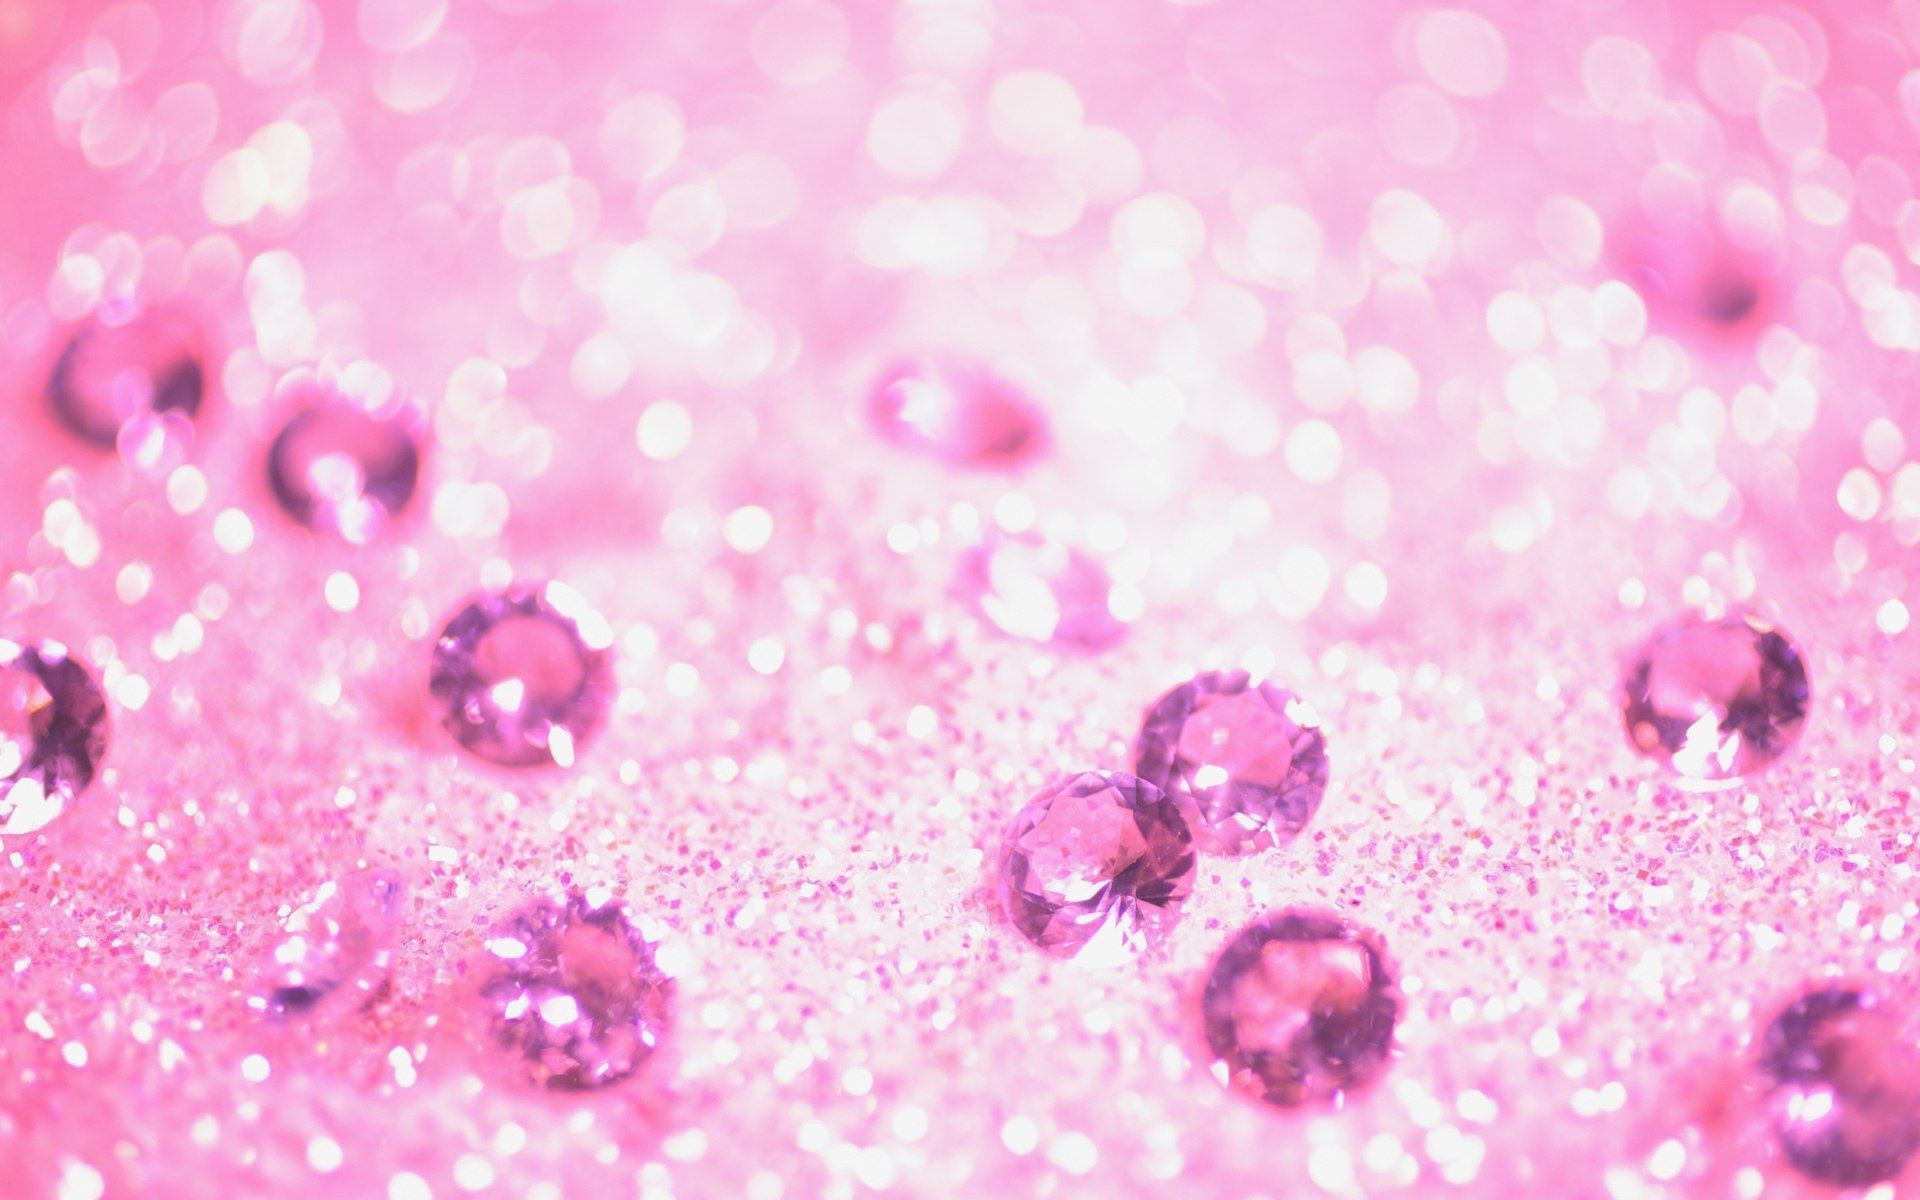 A beautiful pink background with diamonds - Diamond